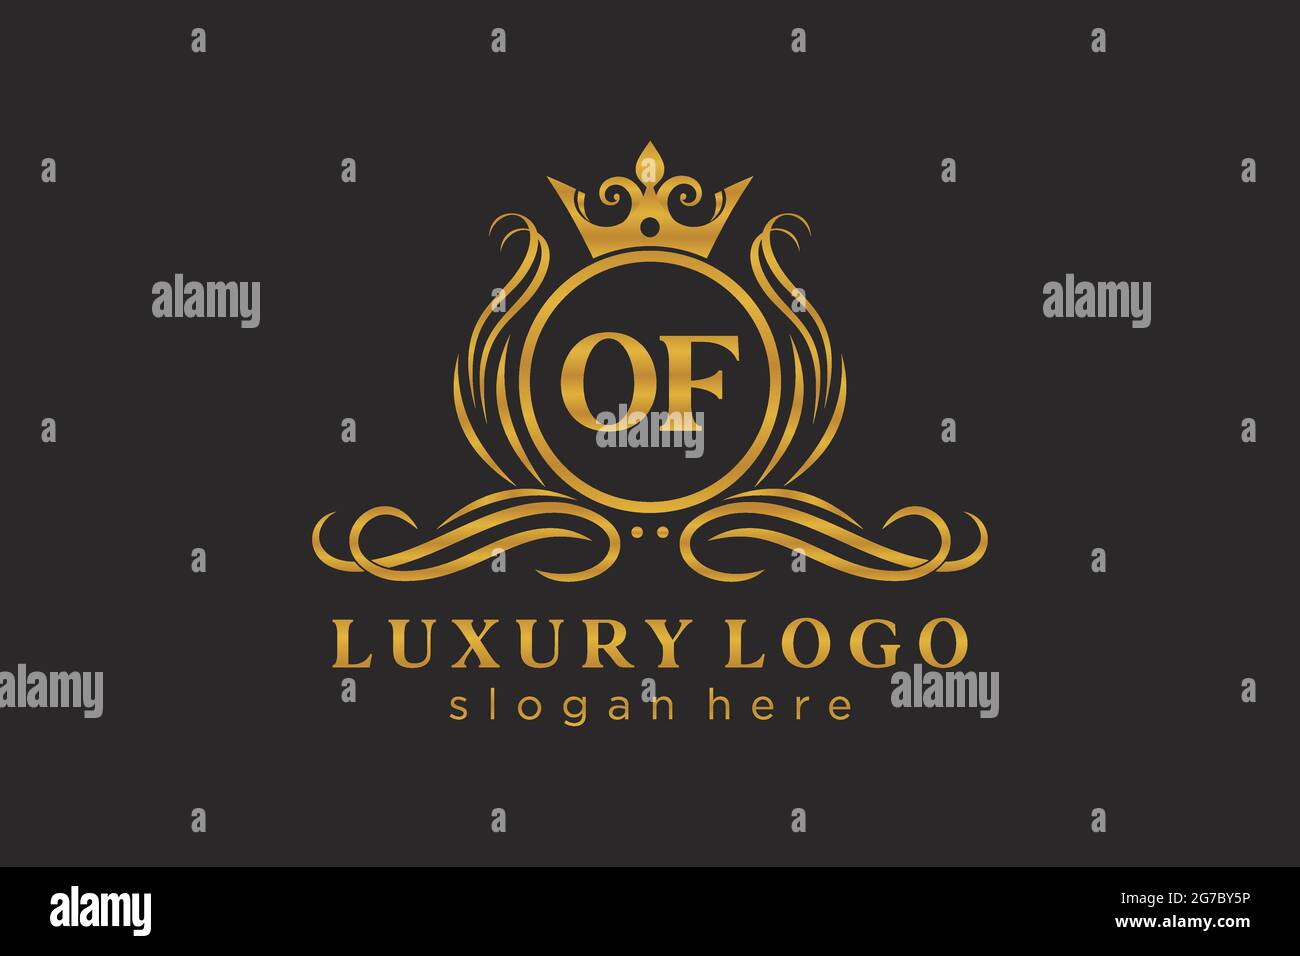 VON Buchstaben Royal Luxury Logo Vorlage in Vektorgrafik für Restaurant, Royalty, Boutique, Cafe, Hotel, Heraldisch, Schmuck, Mode und andere Vektor illustrr Stock Vektor